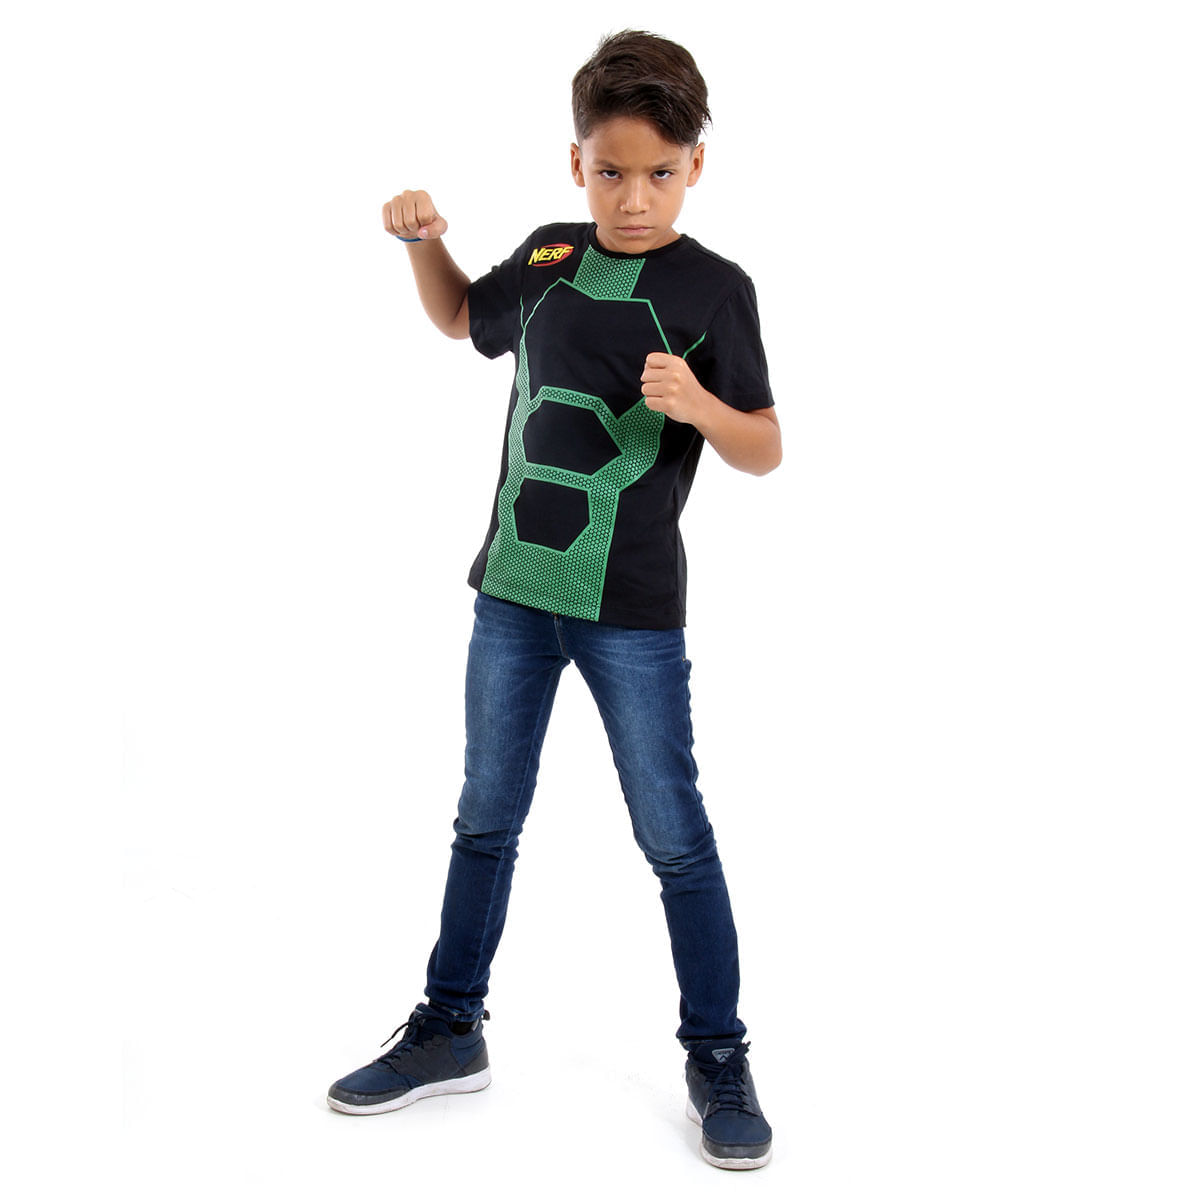 Camiseta Nerf Verde - Sulamericana P / UNICA